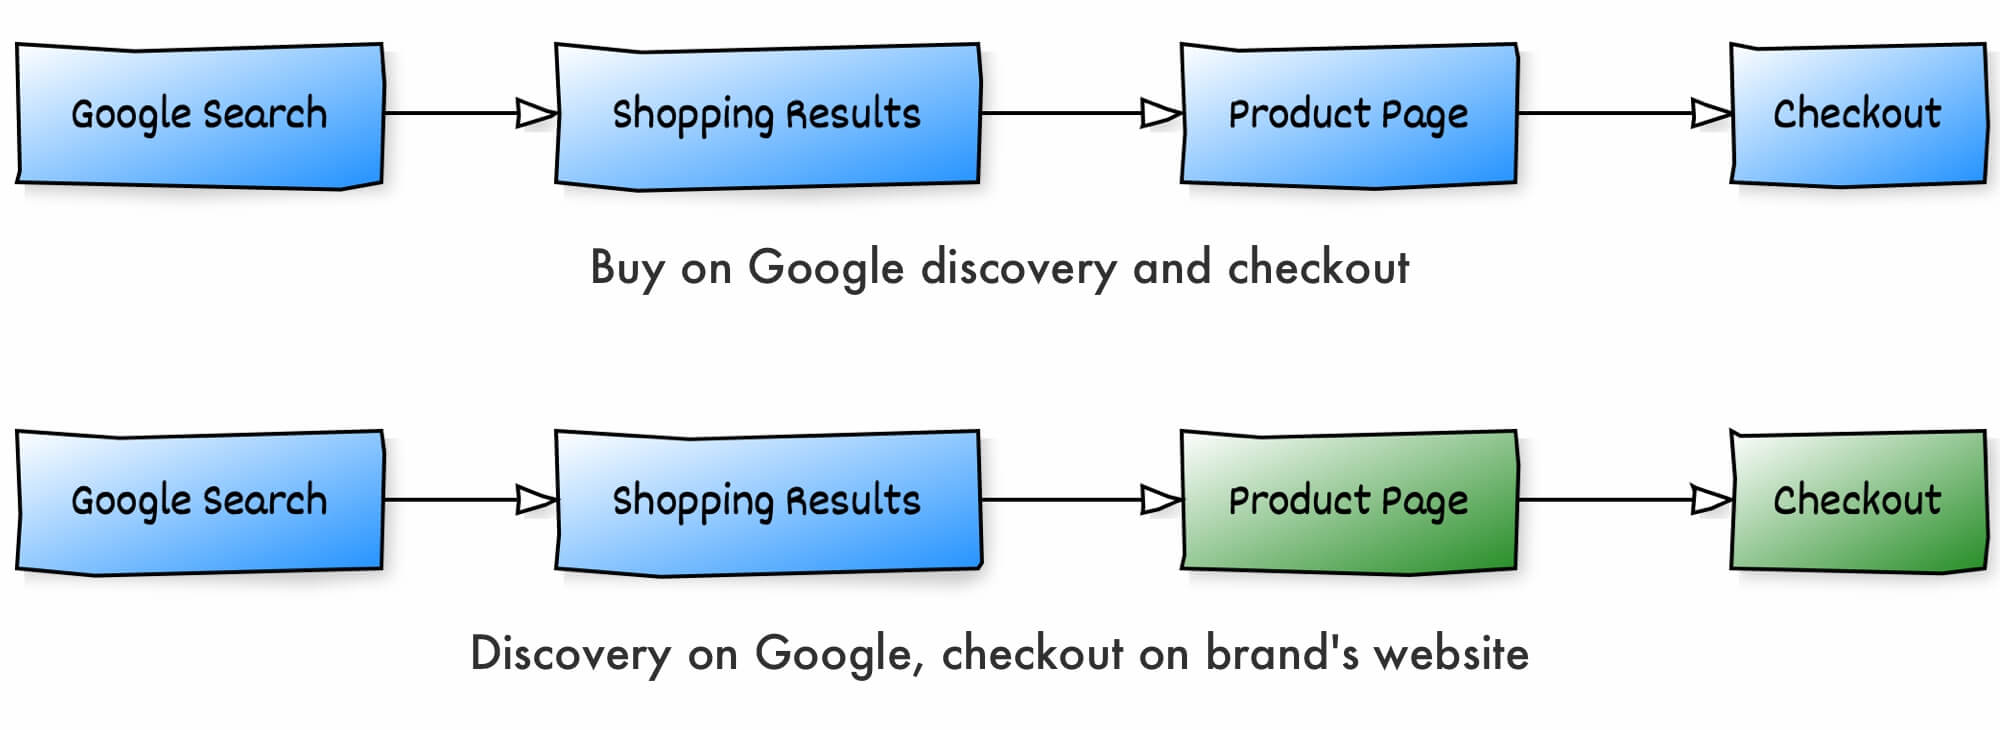 Buy on Google vs Google Shopping